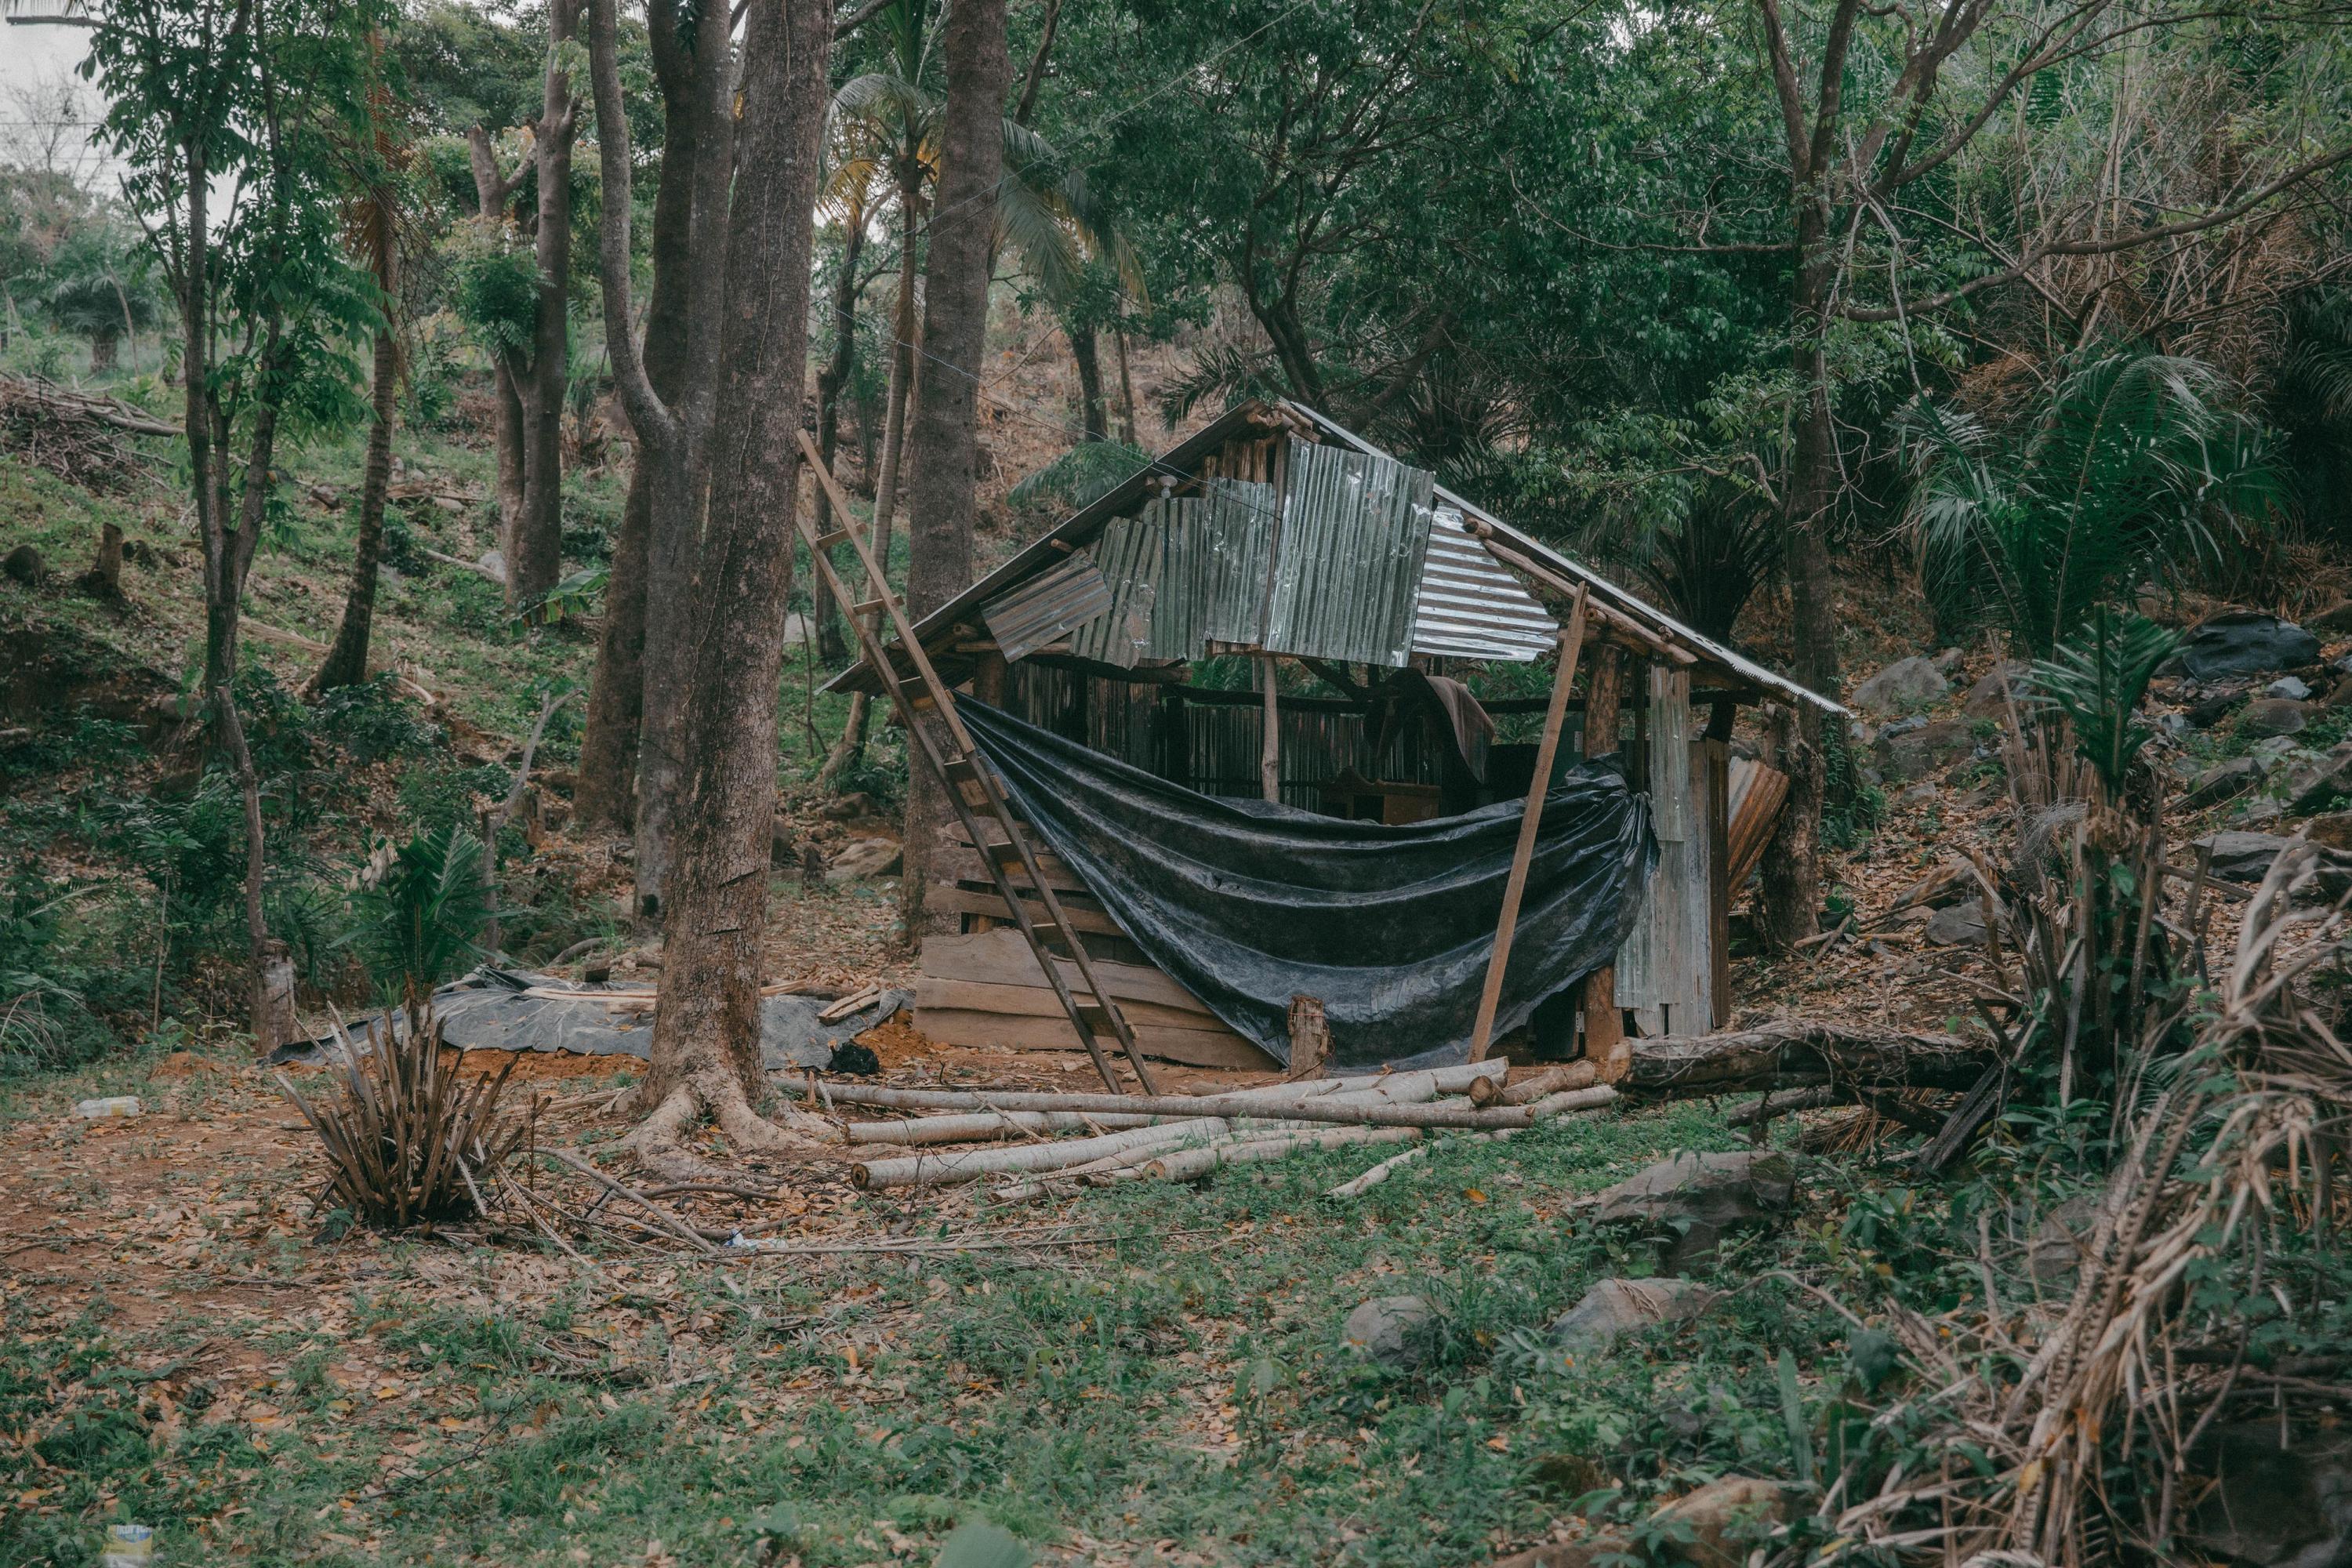 En la recuperación llamada Wabato (Nuestra Casa) se construyen pequeñas casas de lámina y madera que funcionarán como refugio para alguna familia o miembro de la comunidad garífuna. Foto de El Faro: Carlos Barrera